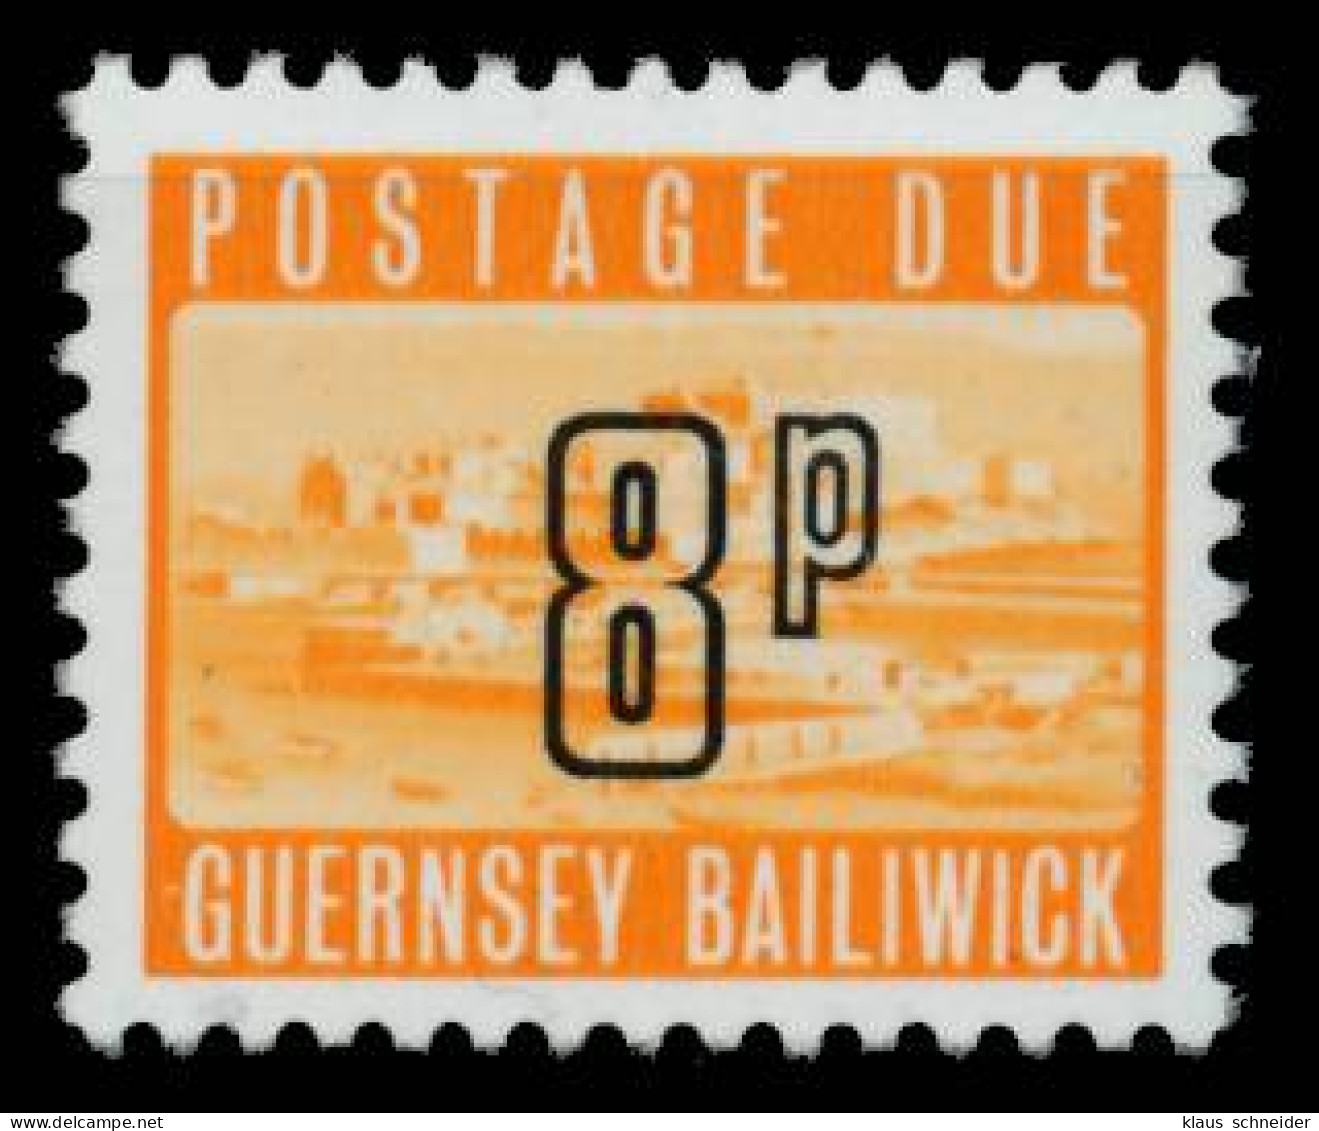 GUERNSEY PORTO Nr 15 Postfrisch X6A672A - Guernsey